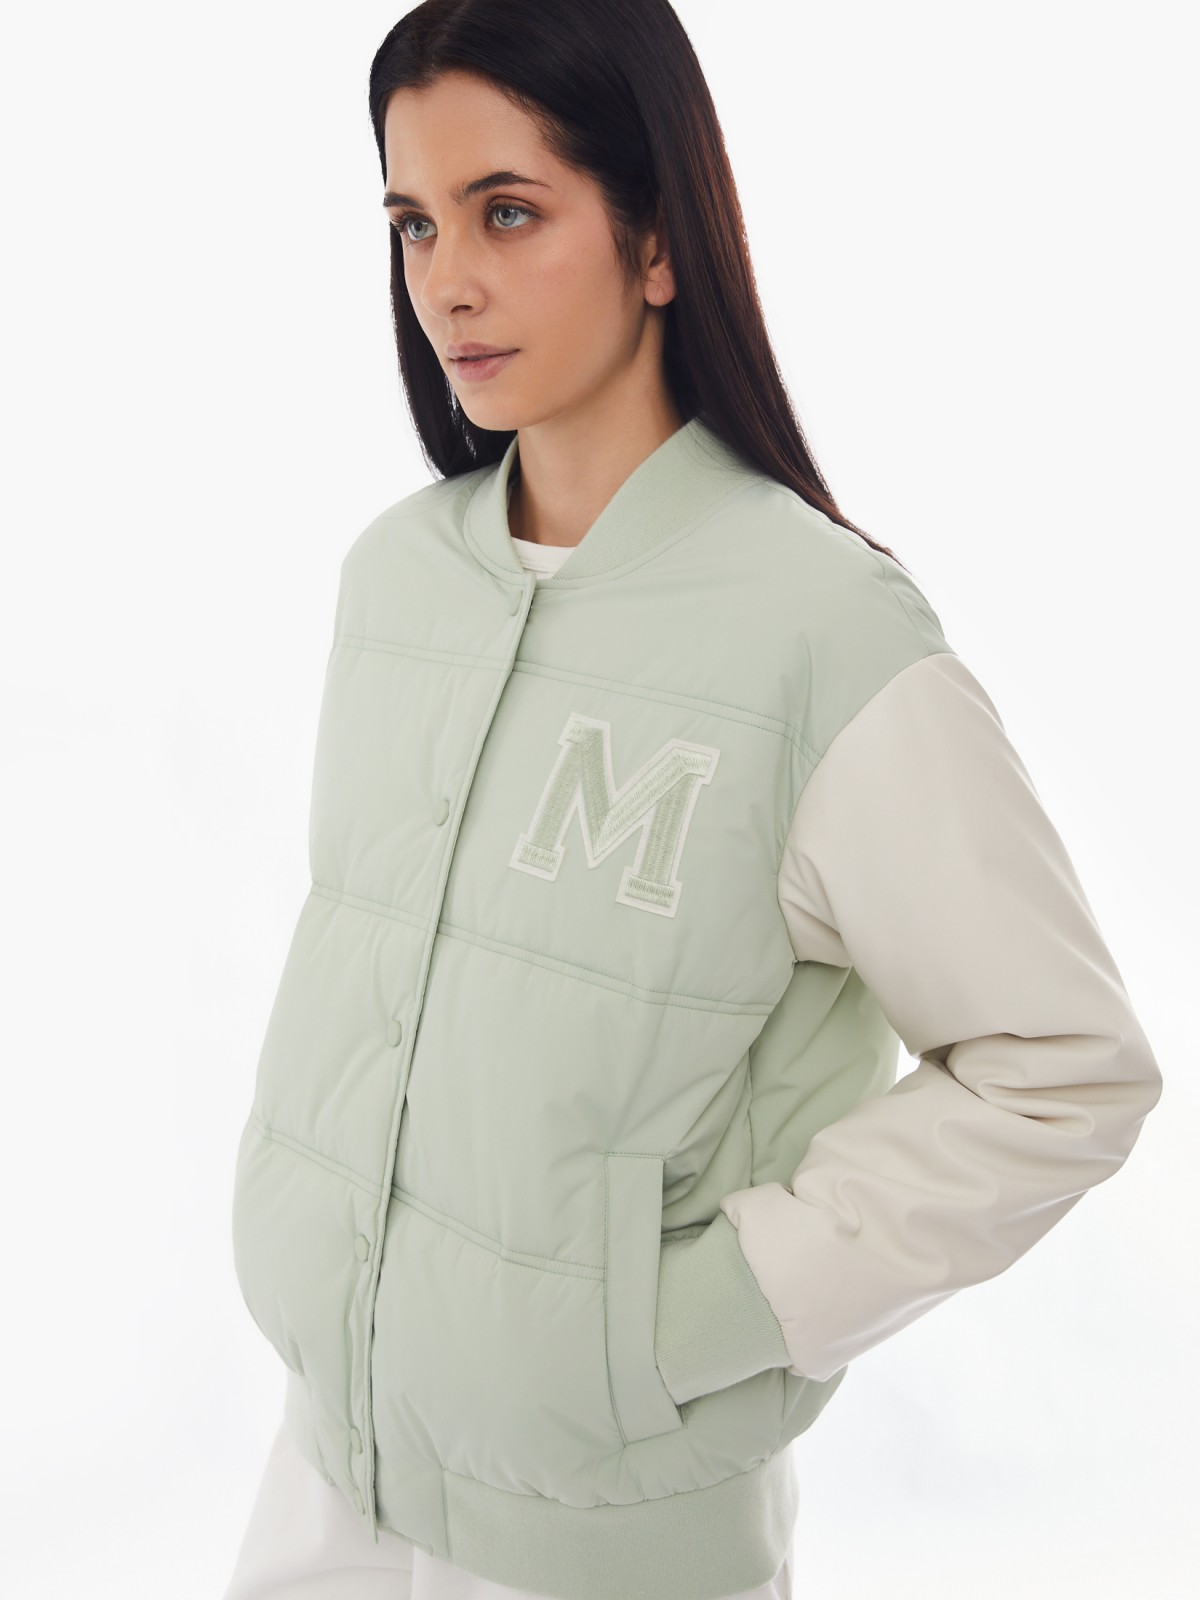 Тёплая куртка-бомбер из экокожи в стиле преппи zolla 024125112284, цвет светло-зеленый, размер XS - фото 3